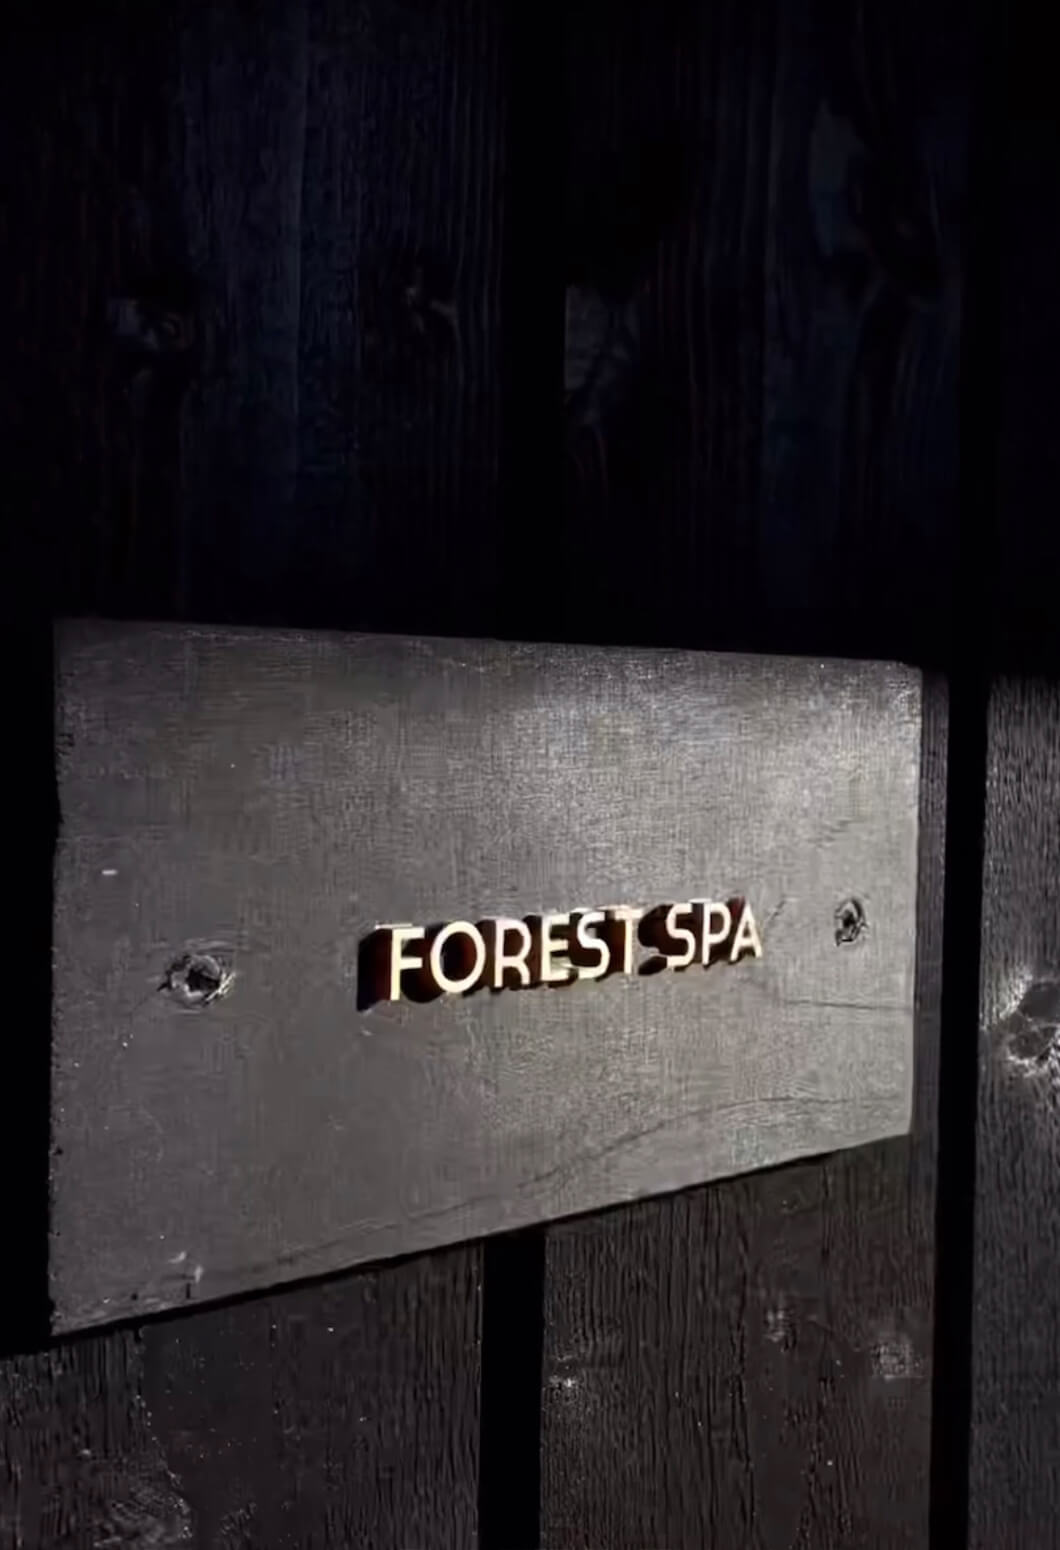 Hilltop Forest Spa external signage